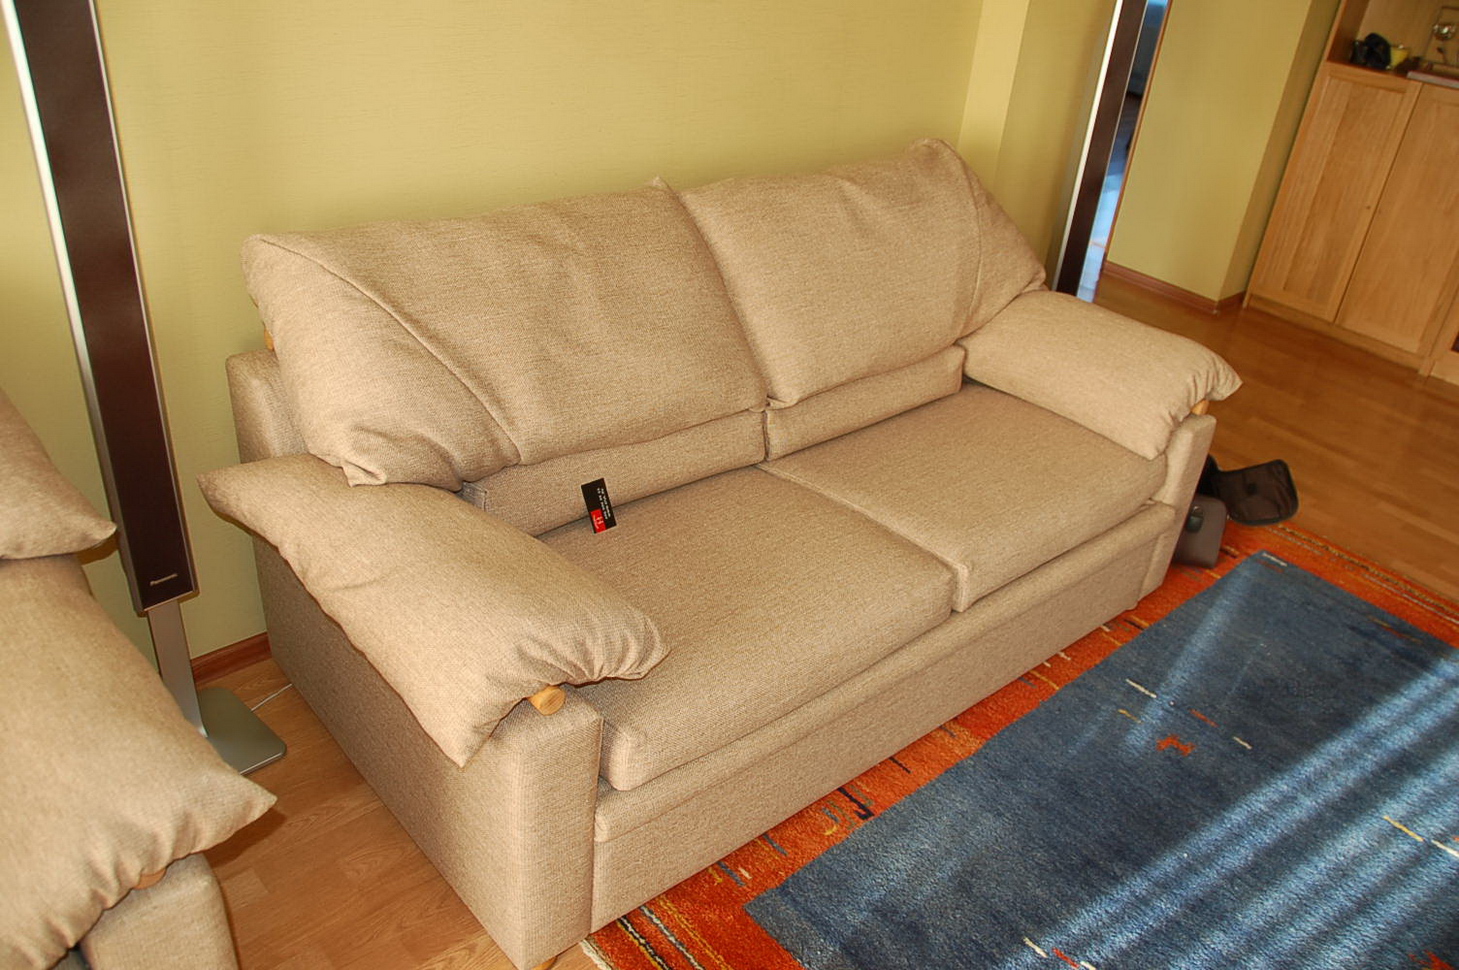 Район Академический - пошив чехлов на диваны, материал лен